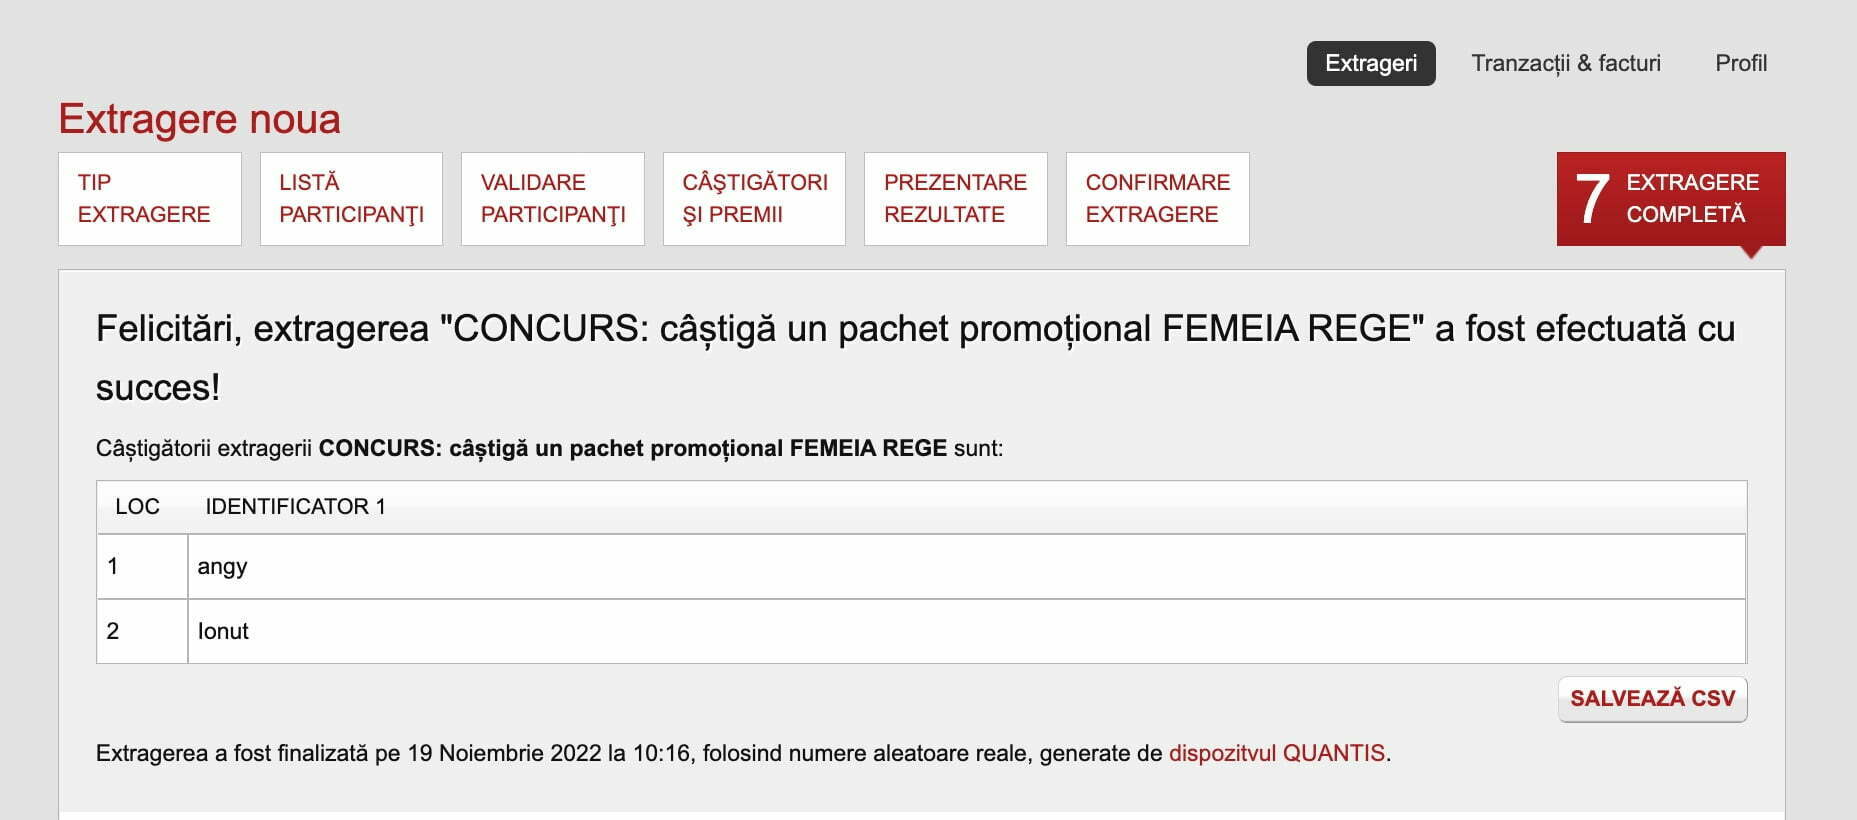 CONCURS: câștigă un pachet promoțional FEMEIA REGE